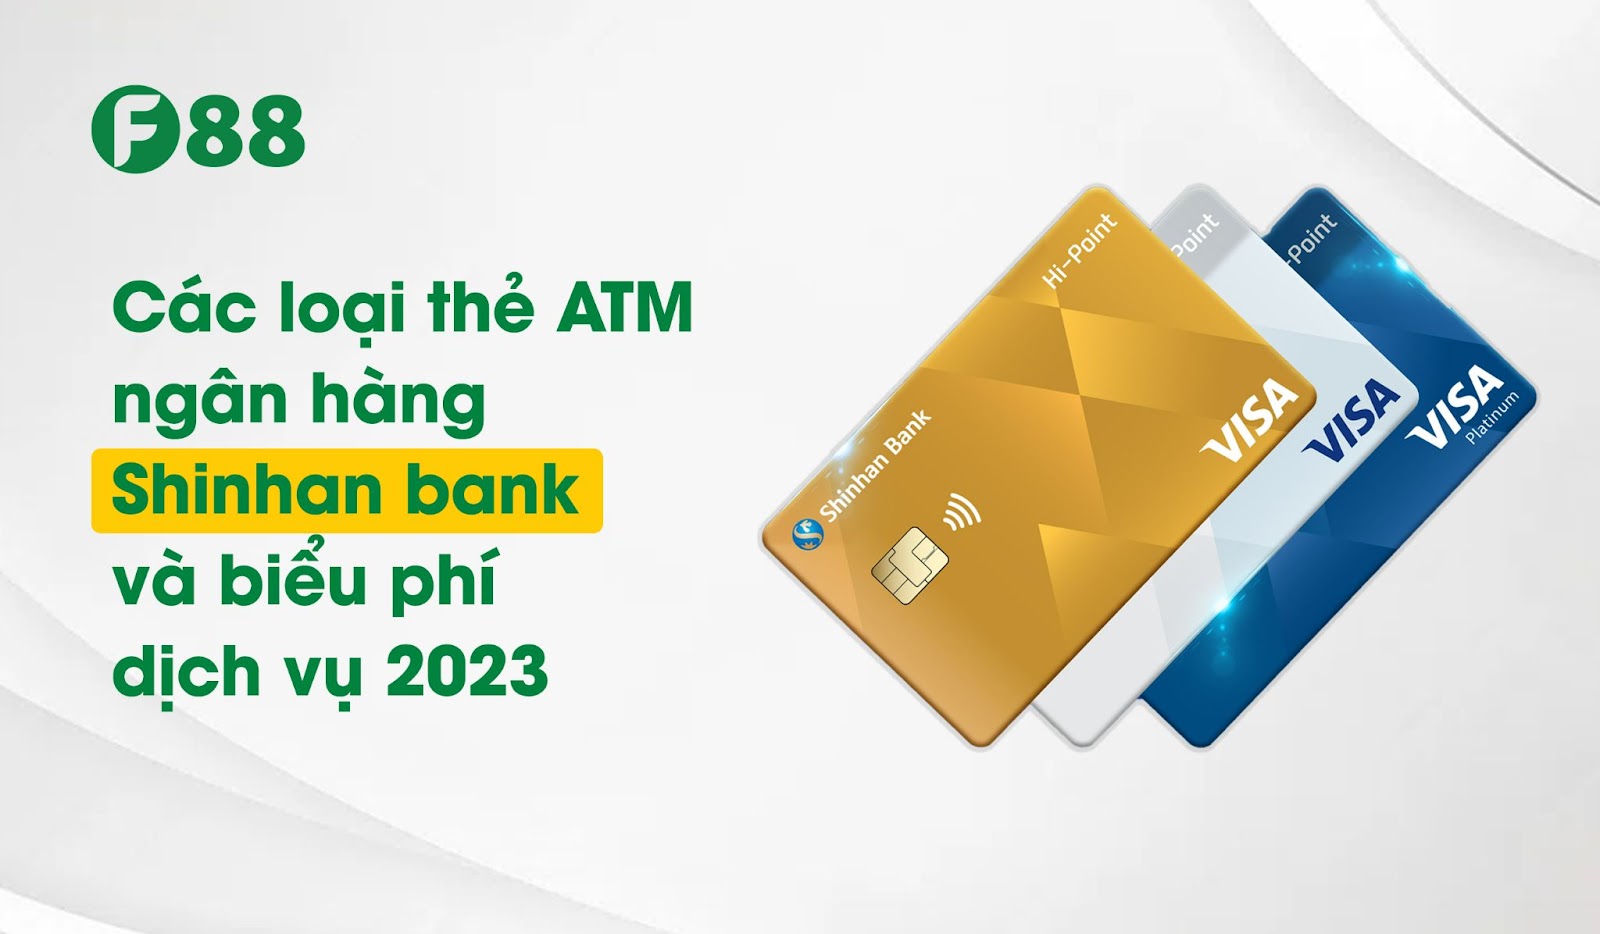 Các loại thẻ ATM ngân hàng Shinhan bank và biểu phí dịch vụ